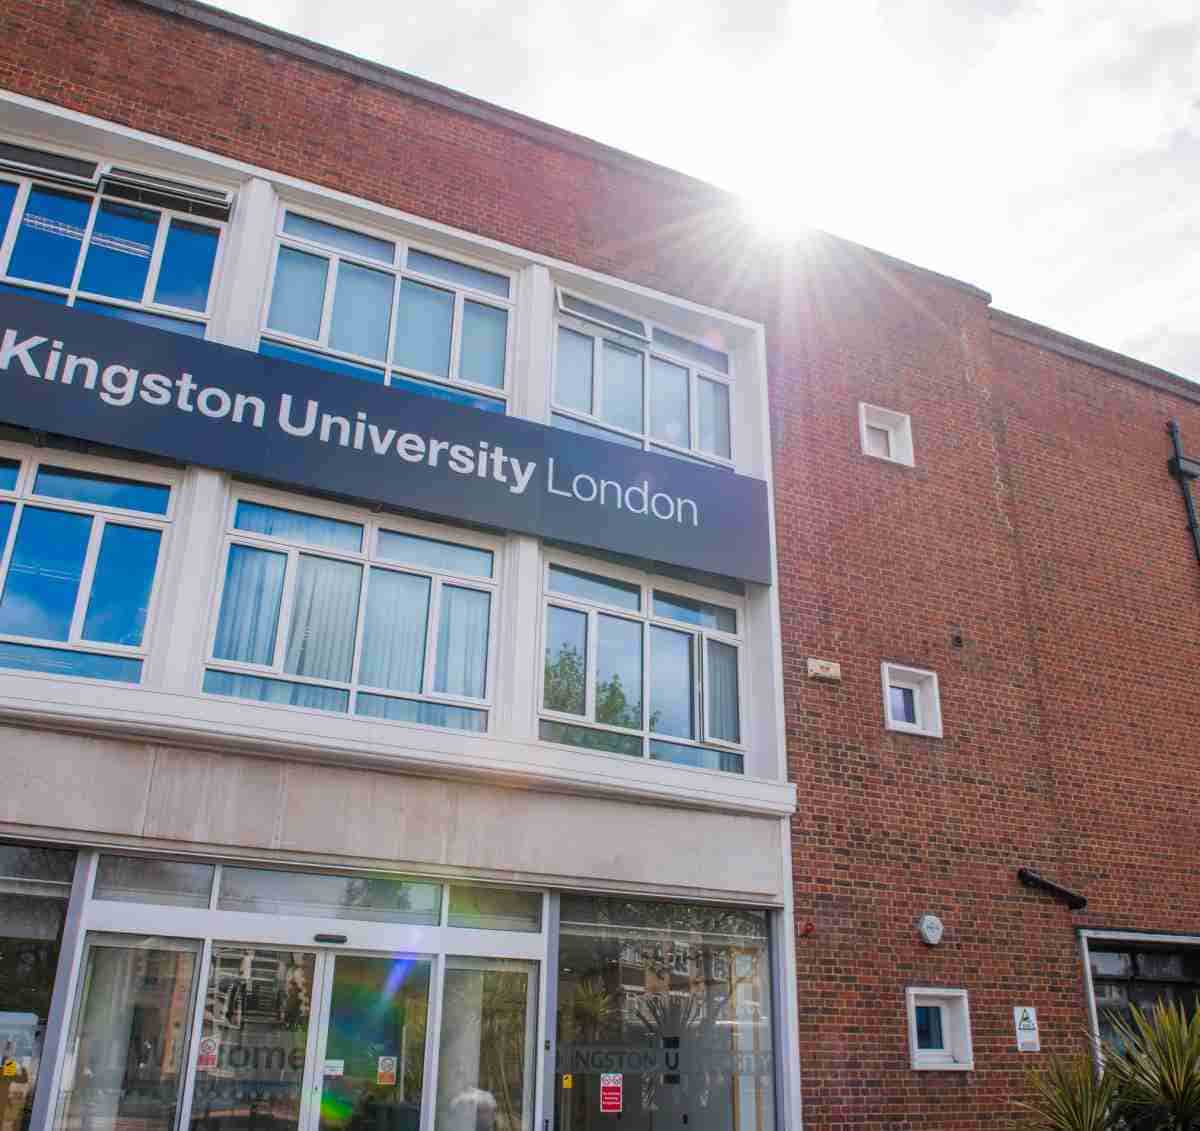 منحة جامعة كينجستون بلندن لدراسة الماجستير في المملكة المتحدة 2021